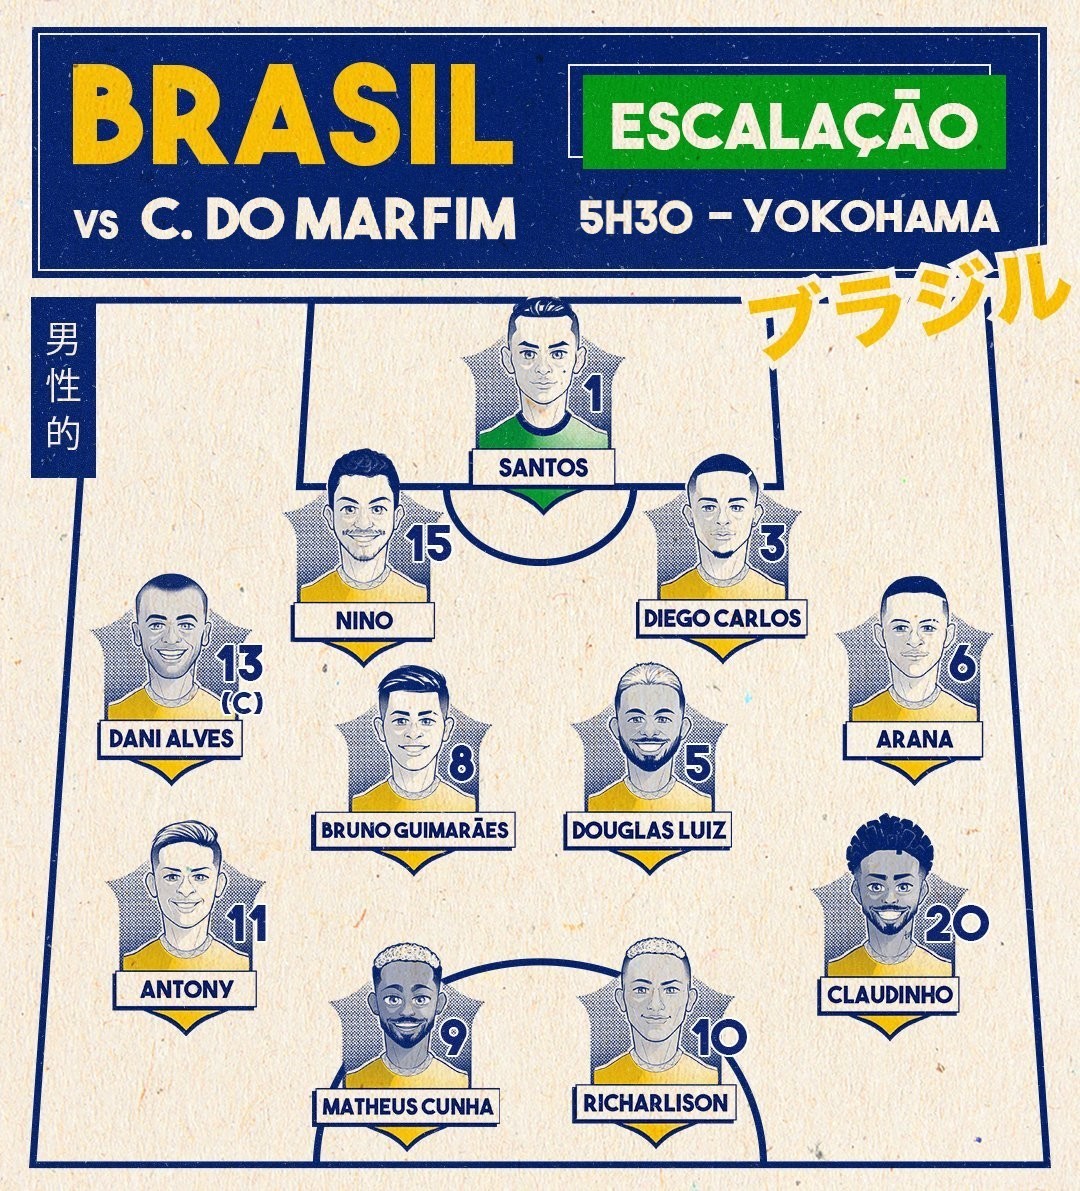 Jogo do Brasil hoje: que horas começa e onde assistir